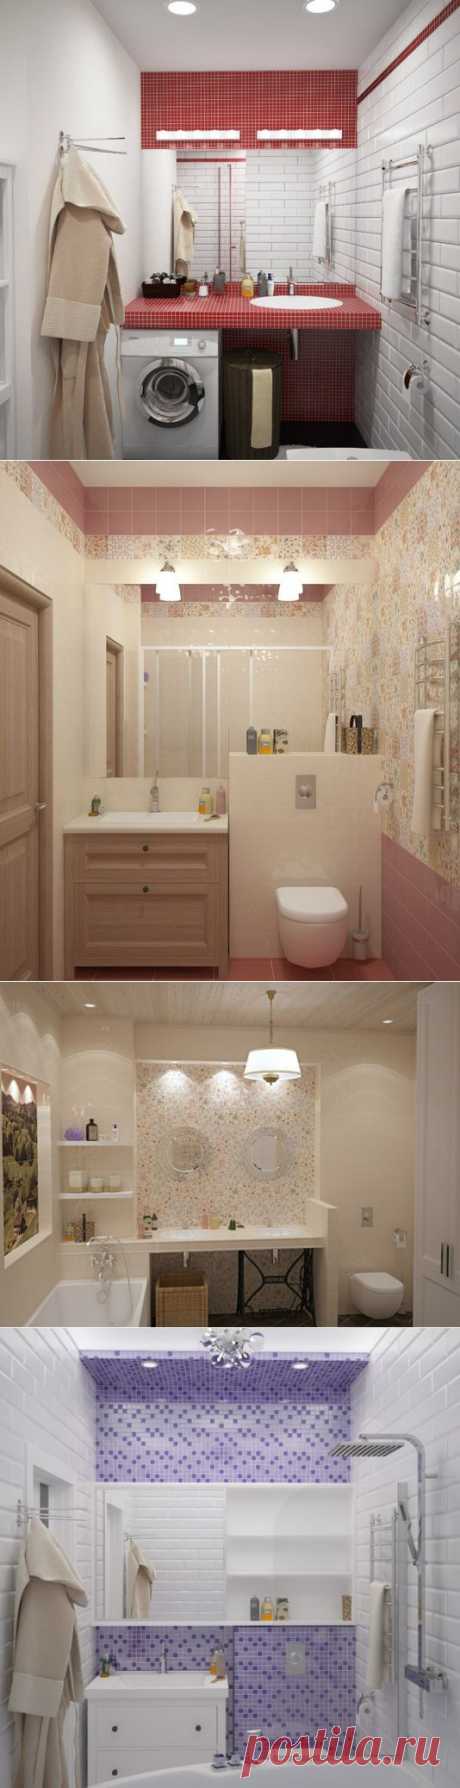 Дизайн интерьера небольших ванных комнат